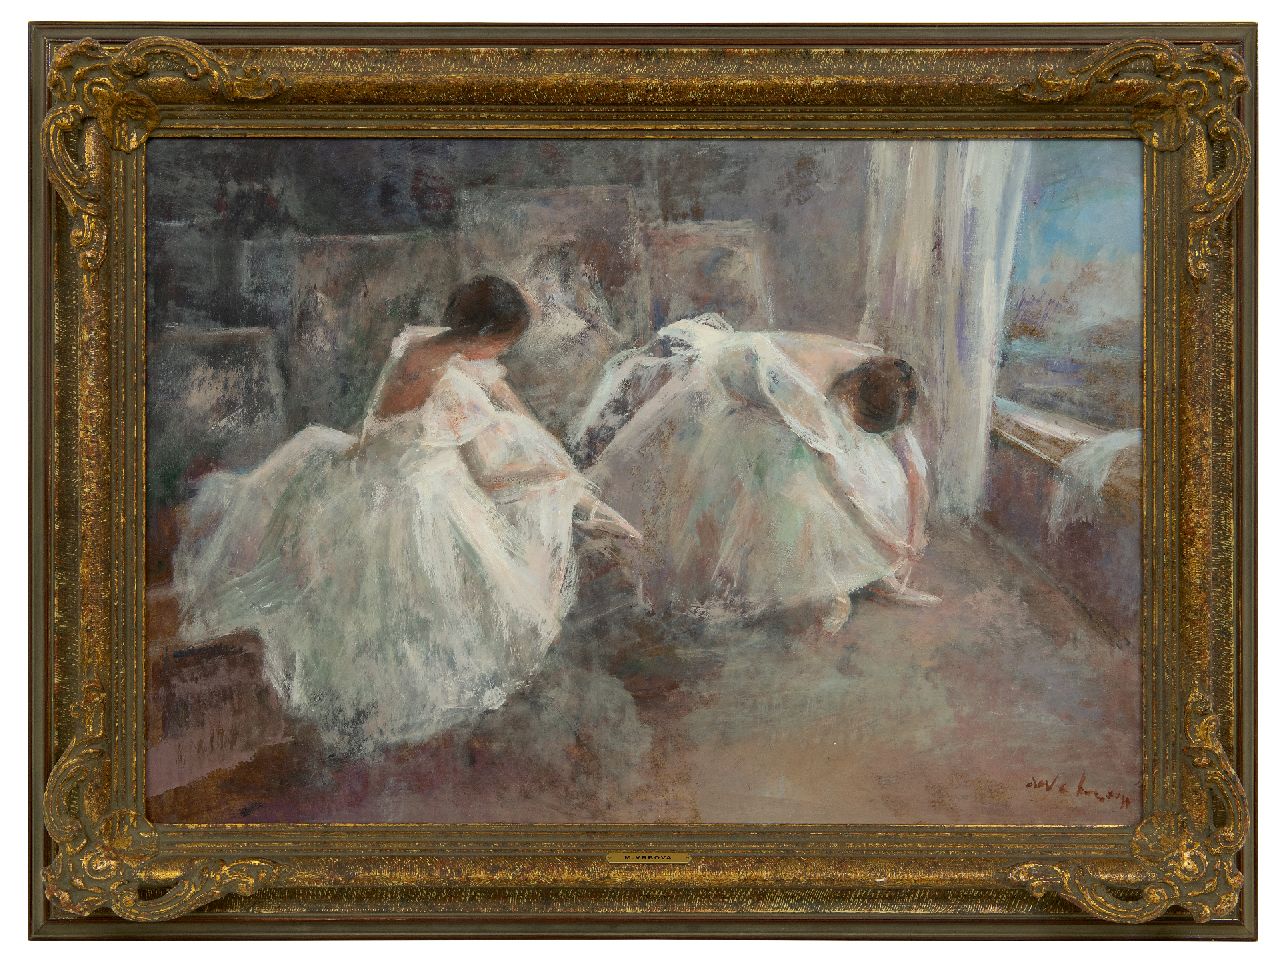 Vrbová-Štefková M.  | Miroslava Vrbová-Štefková | Schilderijen te koop aangeboden | Ballerina's in een atelier, olieverf op board 45,0 x 65,0 cm, gesigneerd rechtsonder (onduidelijk)